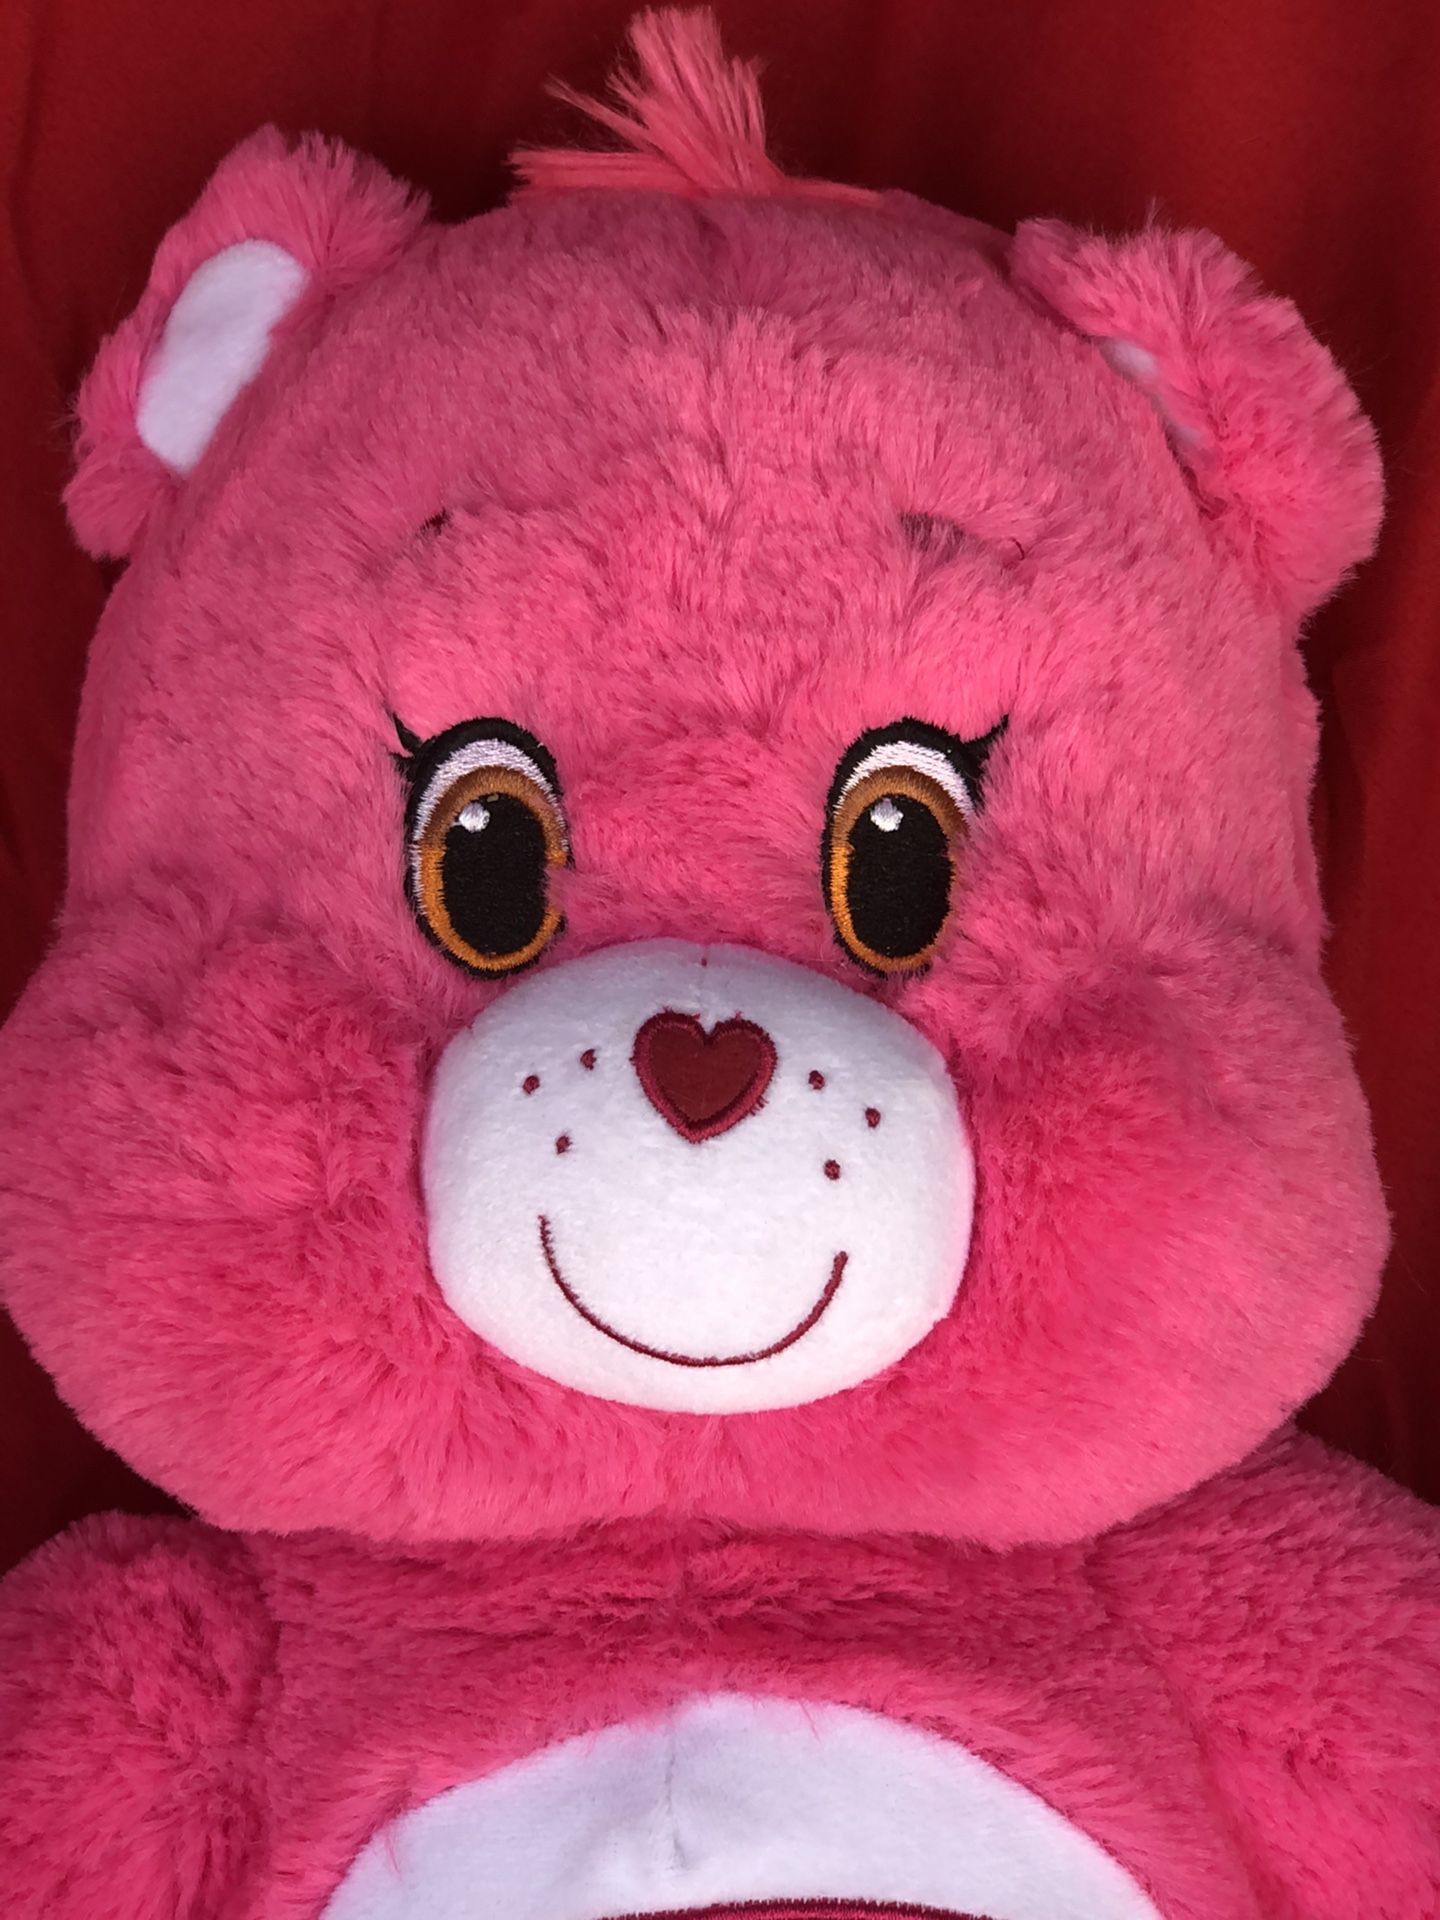 Build a Bear 🐻 ❤️ Teddy Bear Cheer Bear Carebears Care Bears rainbow 🌈 on tummy! Jumbo 18” tall! Plushie plush doll toy sale